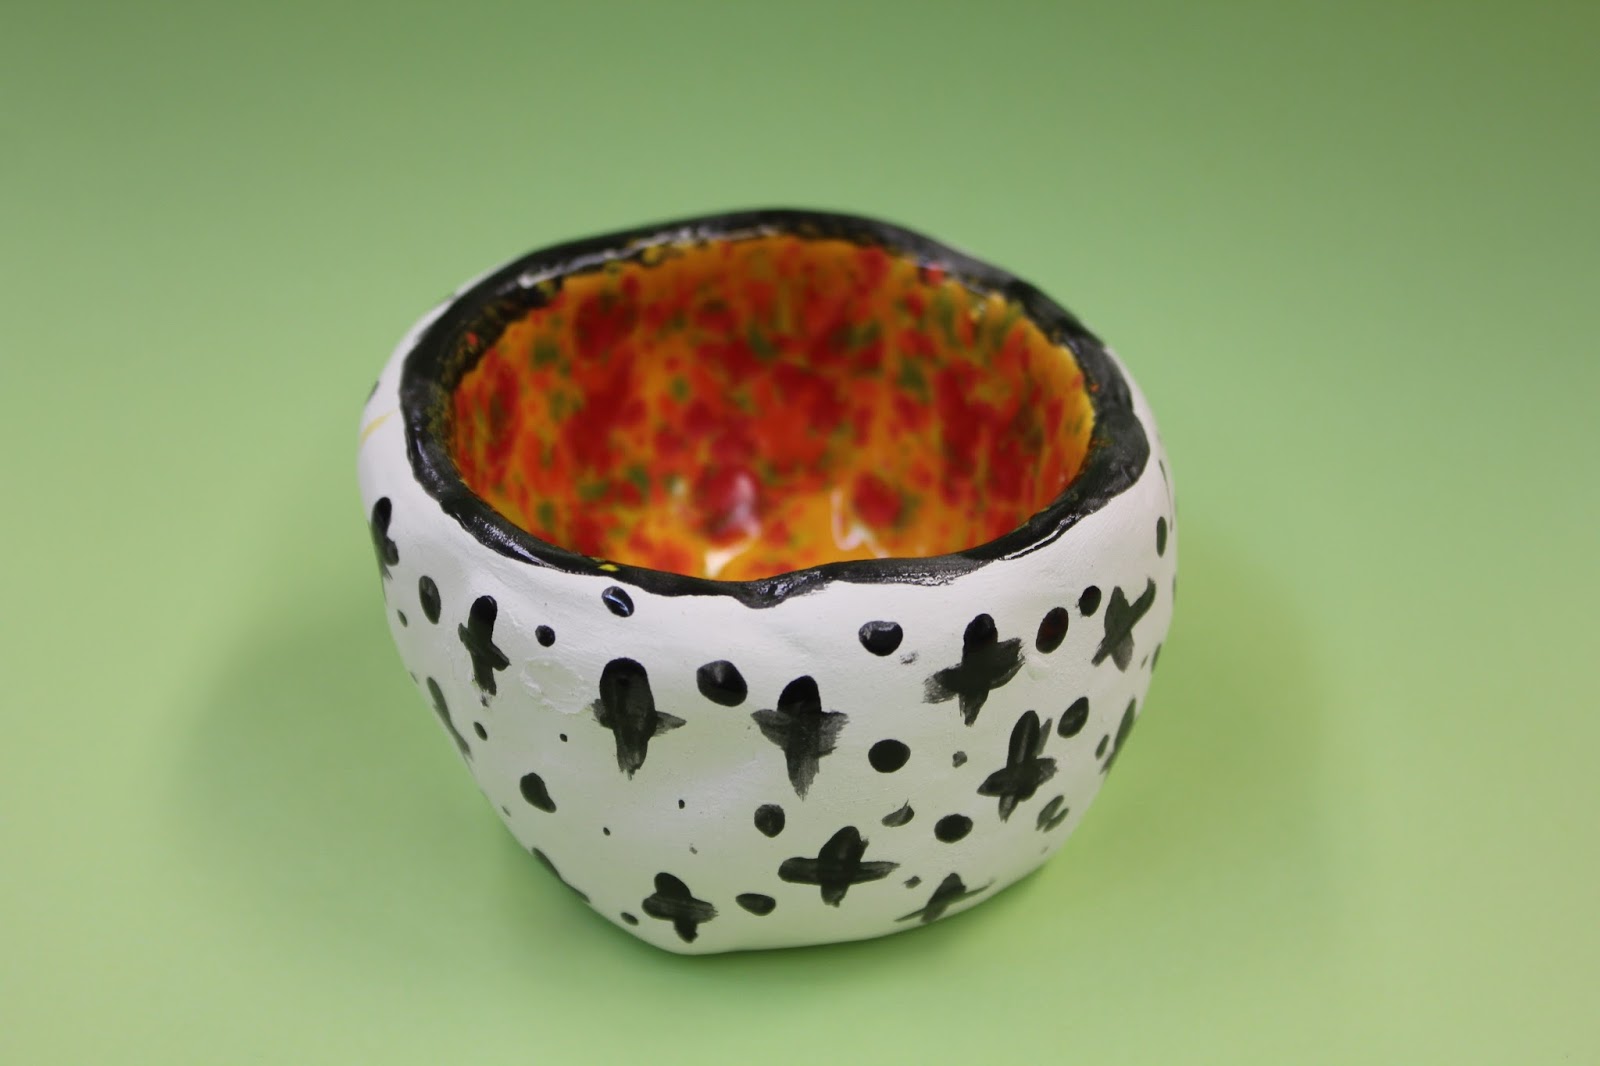 Glazed Ceramic Pinch Pot with Lid